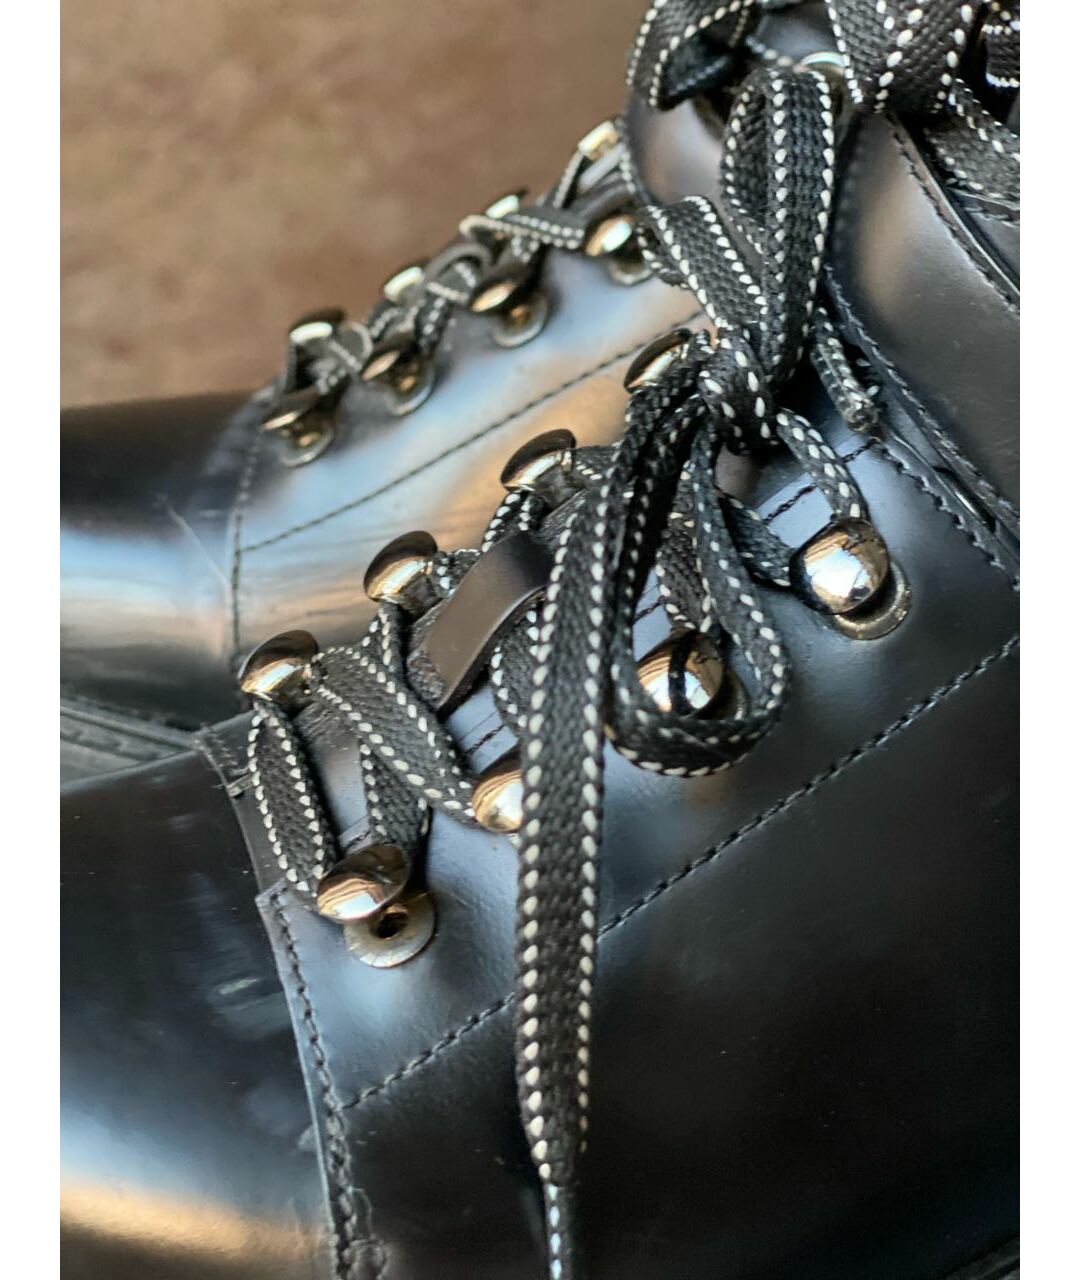 VALENTINO GARAVANI Черные кожаные ботинки, фото 7